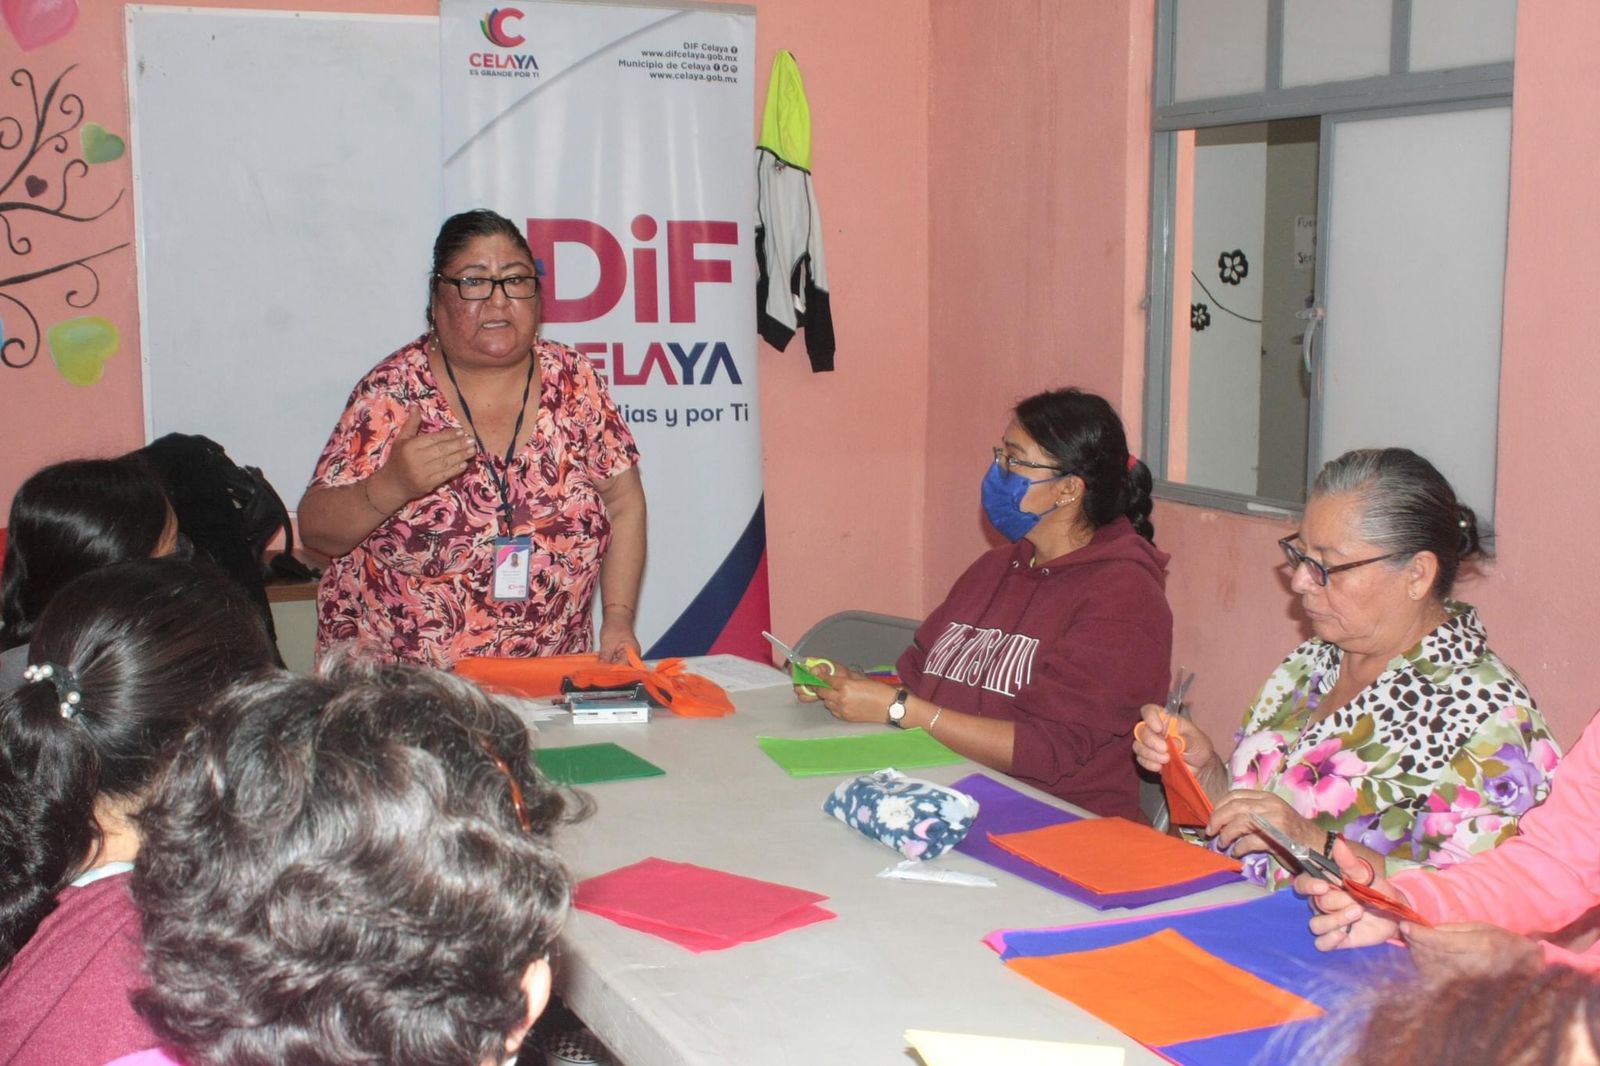 DIF Contigo lleva taller, consultas psicológicas, trabajo social y asesoría jurídica a San Miguel Octopan.